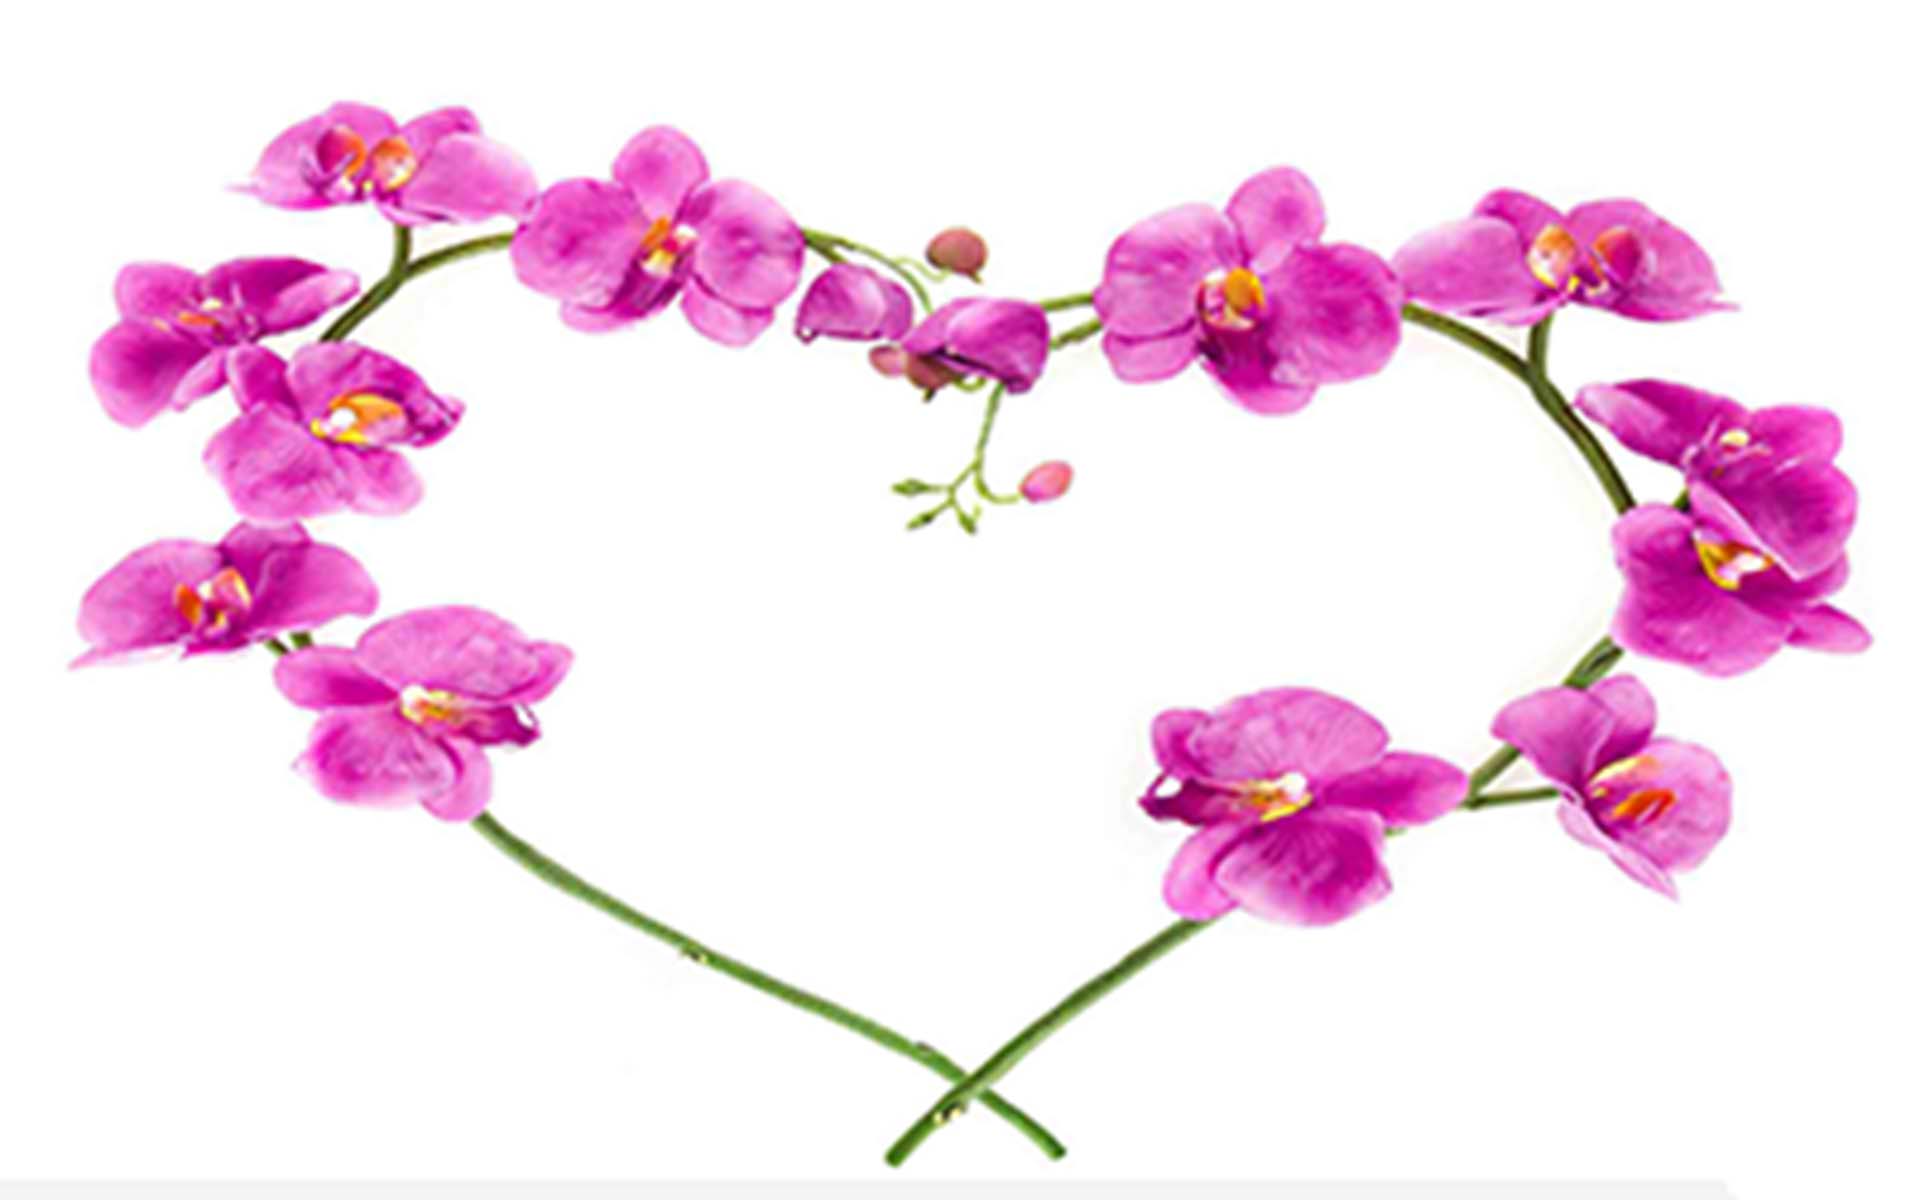 Hoa phong lan: Hoa phong lan là loài hoa tuyệt đẹp với những cánh hoa mảnh mai, tinh tế và sắc trắng không tì vết. Hãy chiêm ngưỡng hình ảnh của loài hoa này để cảm nhận được sự thanh tao, nhẹ nhàng cùng vẻ đẹp kiêu sa hoàn hảo.